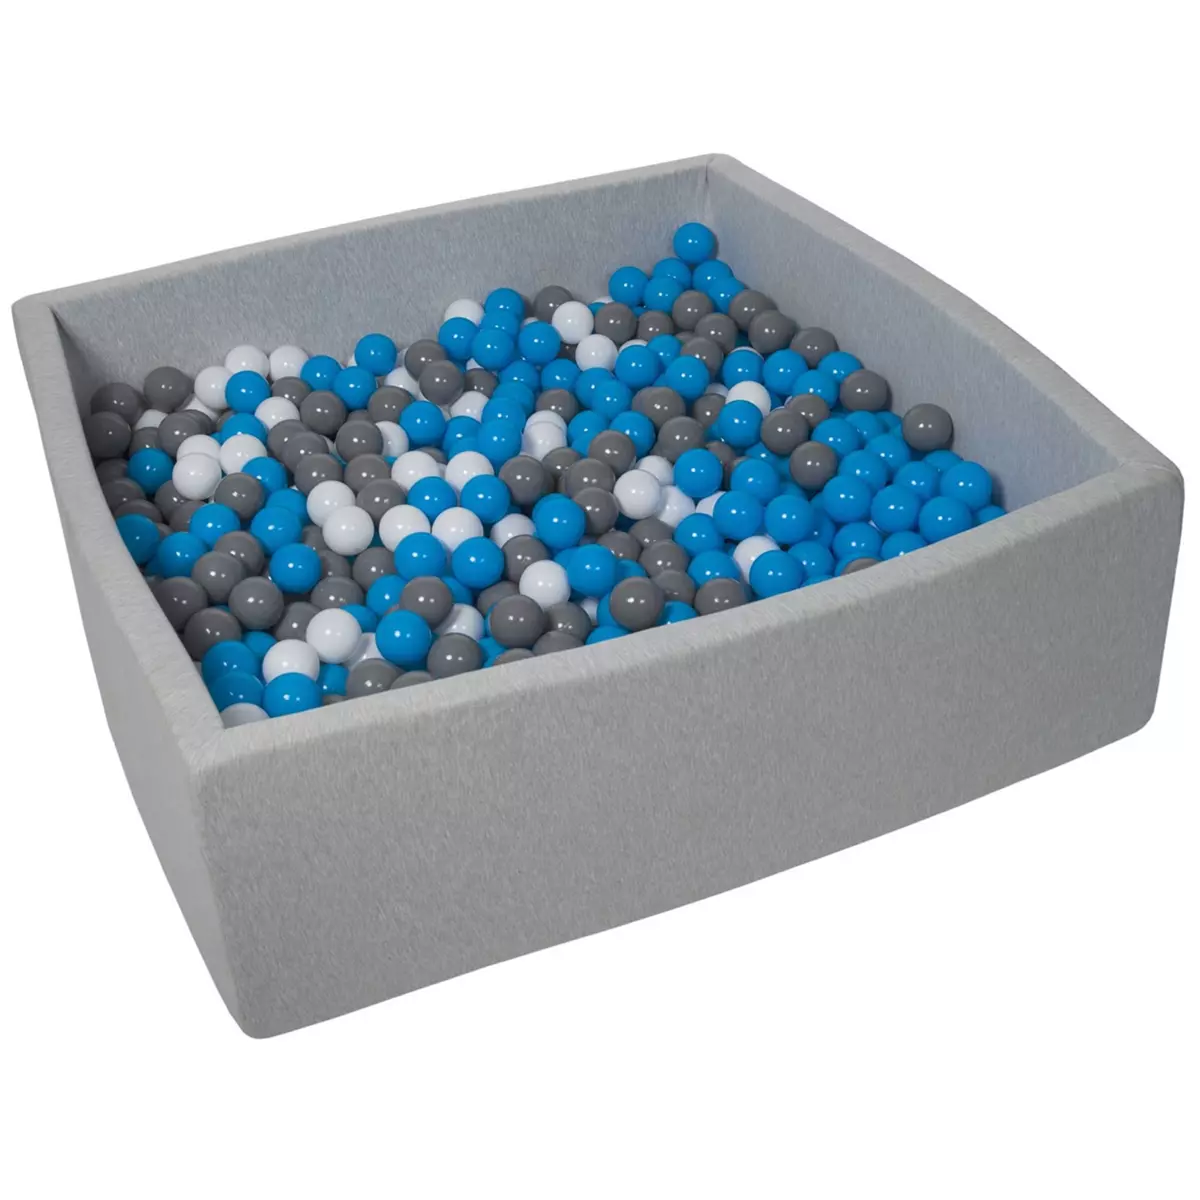  Piscine à balles pour enfant, 120x120 cm, Aire de jeu + 900 balles blanc, bleu, gris